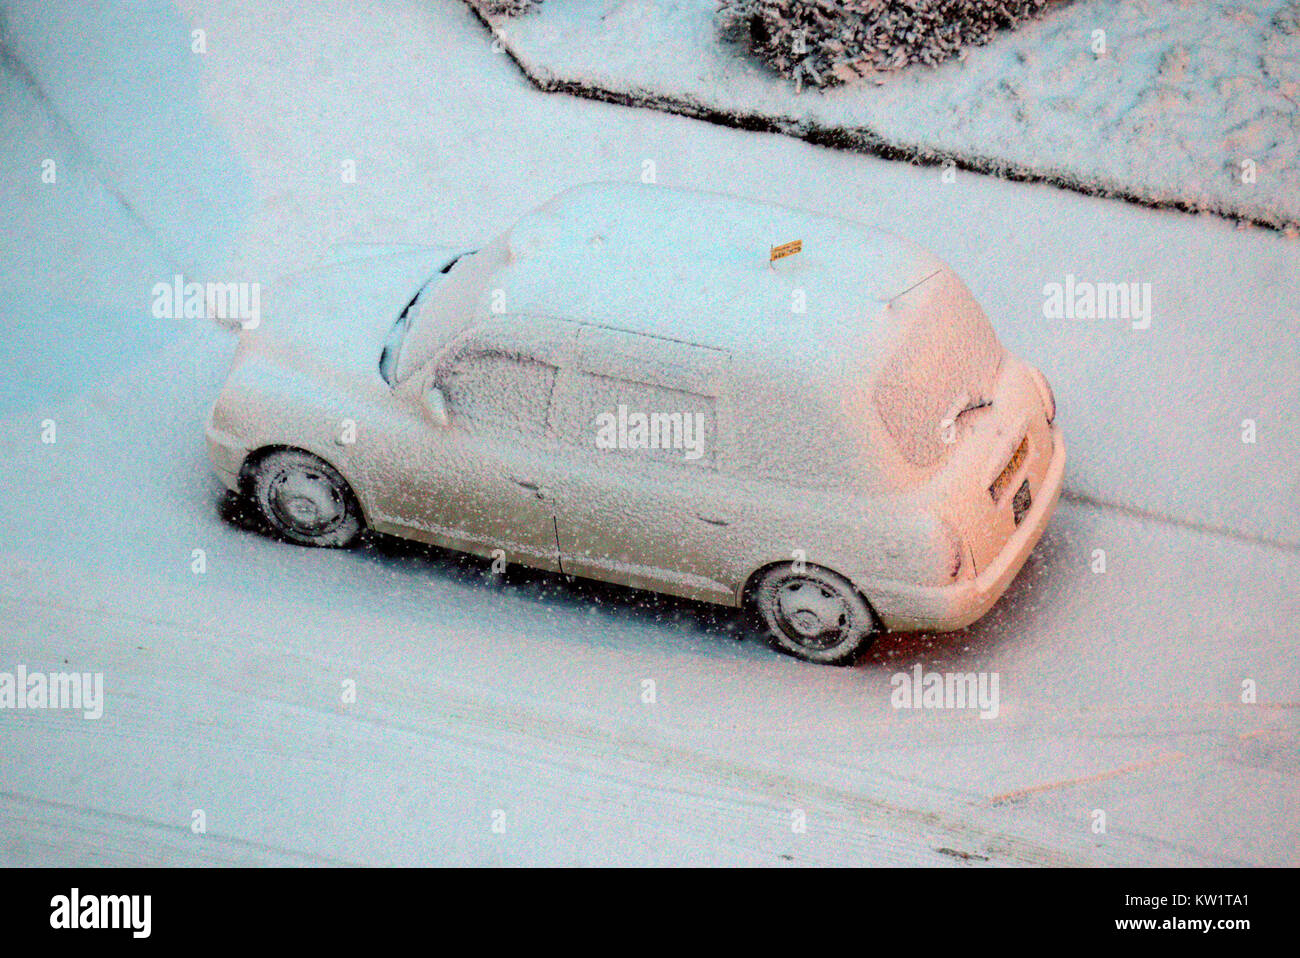 Glasgow, Scotland, Regno Unito. 29 Dic, 2017. Regno Unito: meteo neve pesante caduta su la notte più fredda dell'anno risultava in un taxi bianco invece di uno nero. Credito: gerard ferry/Alamy Live News Foto Stock